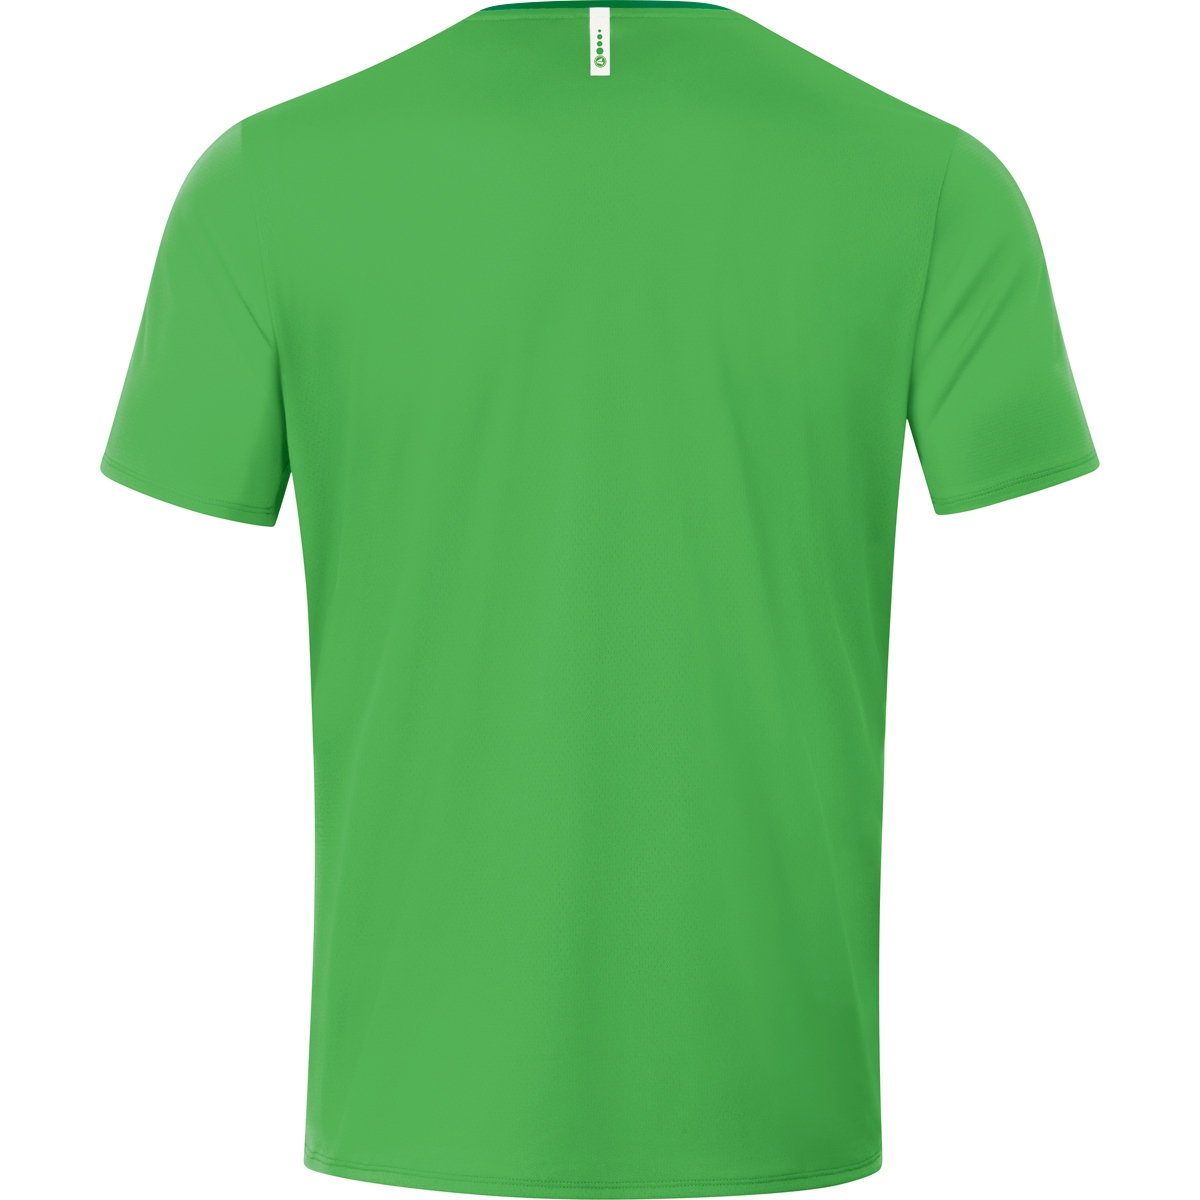 Champ Gr. 6120 4XL, Herren, 2.0 JAKO soft green/sportgrün, T-Shirt